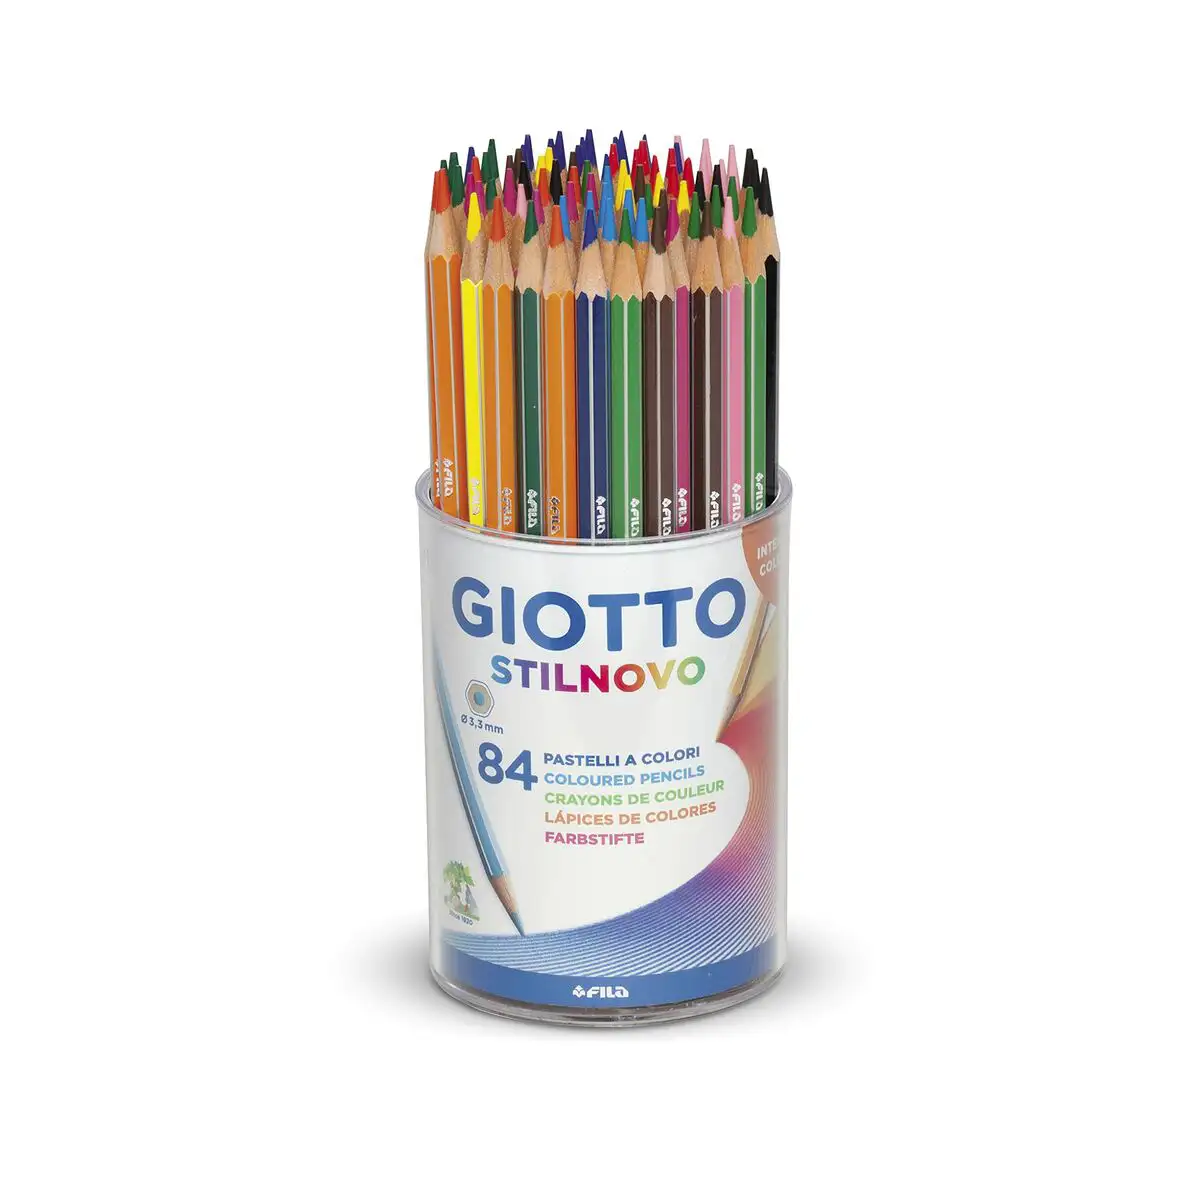 Crayons de couleur giotto stilnovo reconditionne d _9210. DIAYTAR SENEGAL - Votre Source de Découvertes Shopping. Découvrez des trésors dans notre boutique en ligne, allant des articles artisanaux aux innovations modernes.